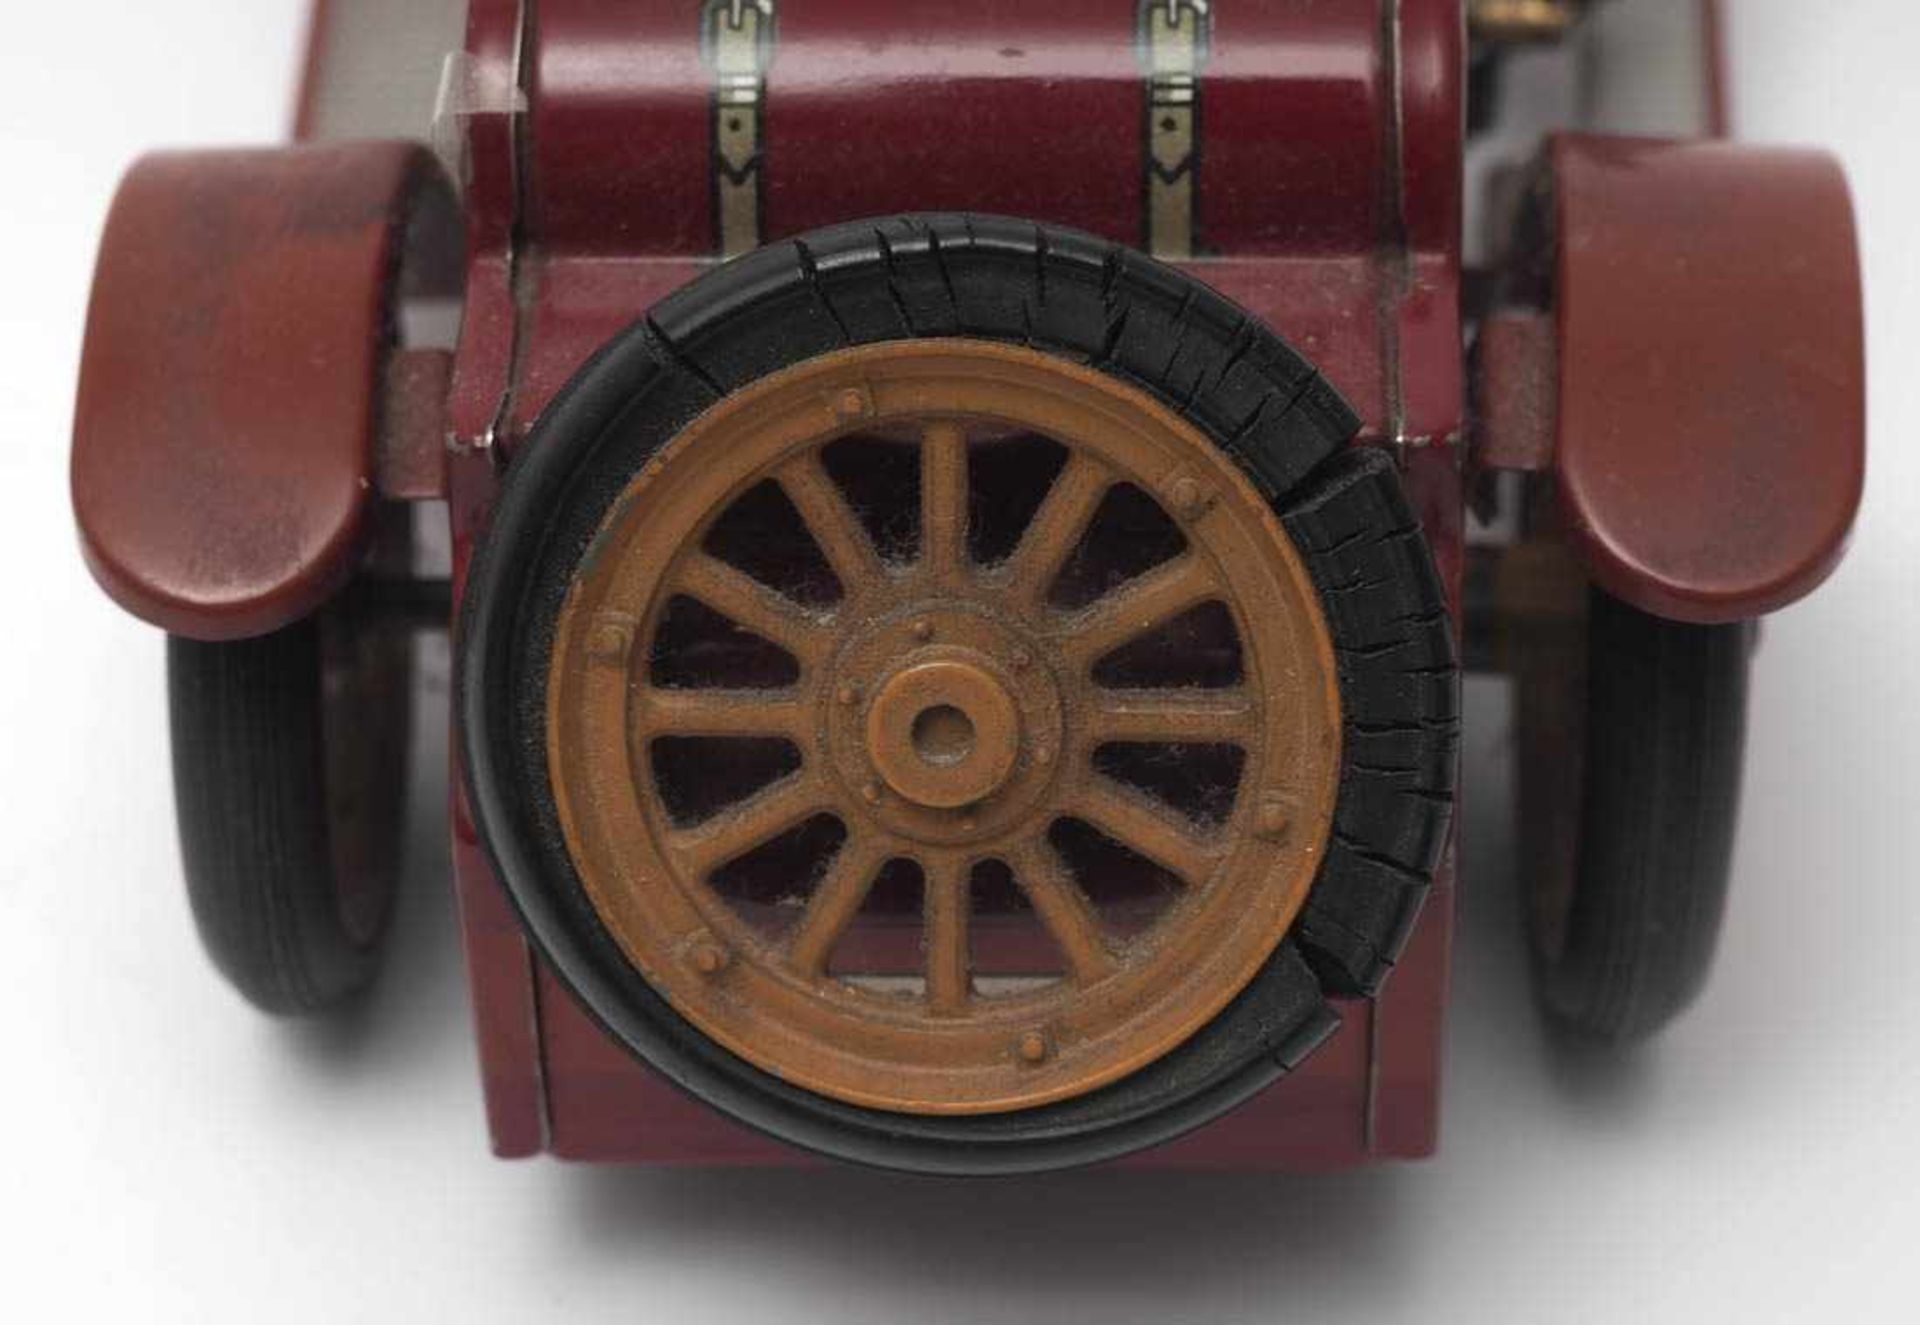 Mercer 1225, SchucoBlech, farbig lackiert. Aufzugmechanismus intakt, Originalschlüssel vorhanden. - Bild 3 aus 4